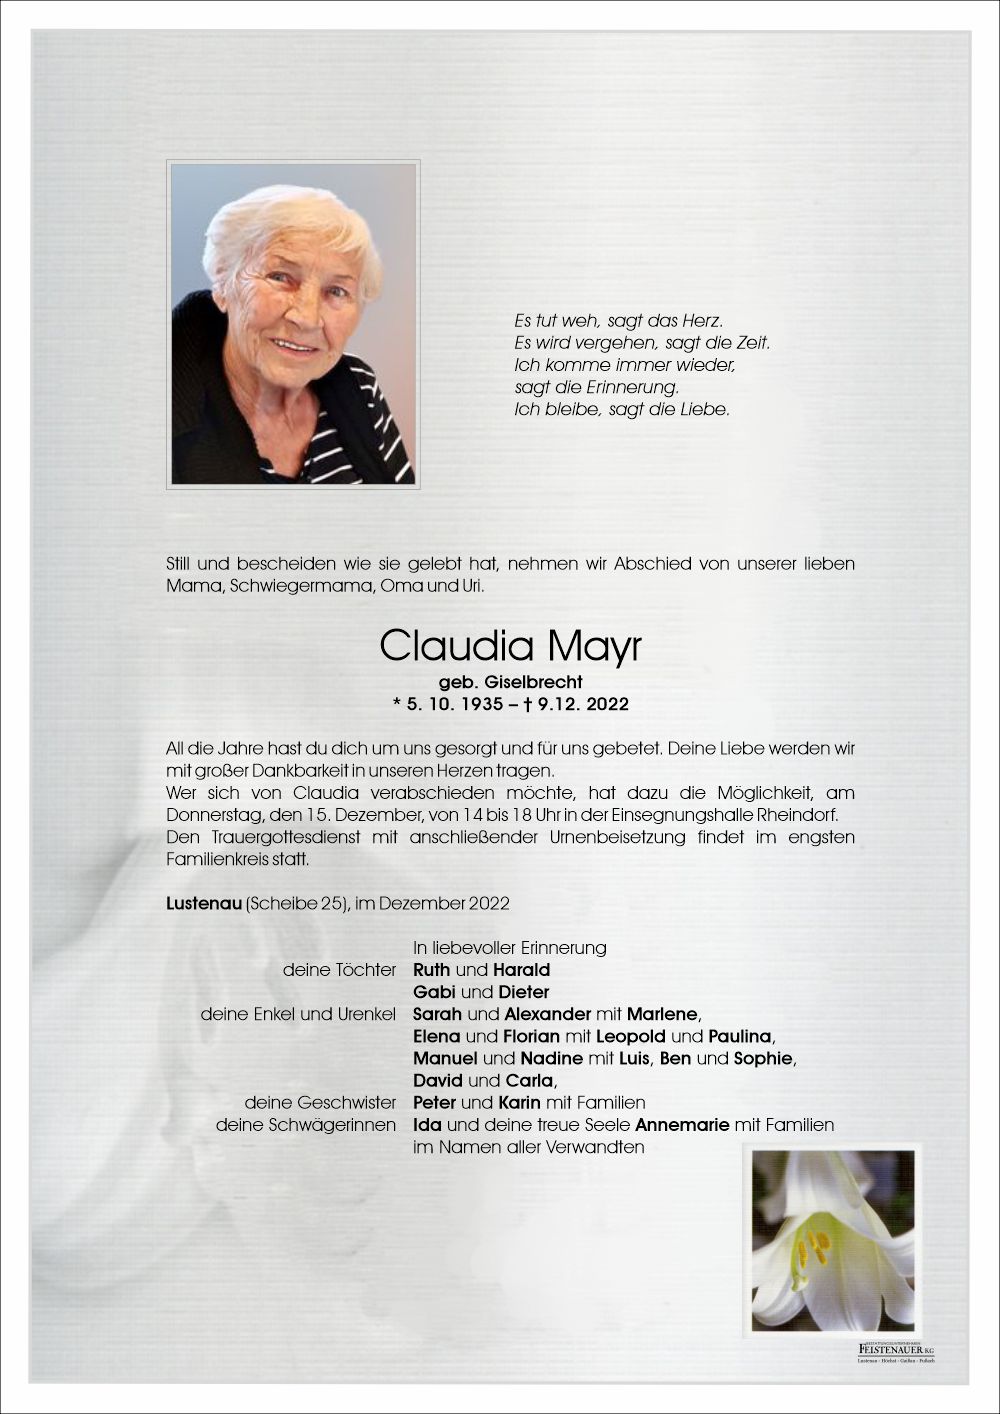 Claudia Mayr